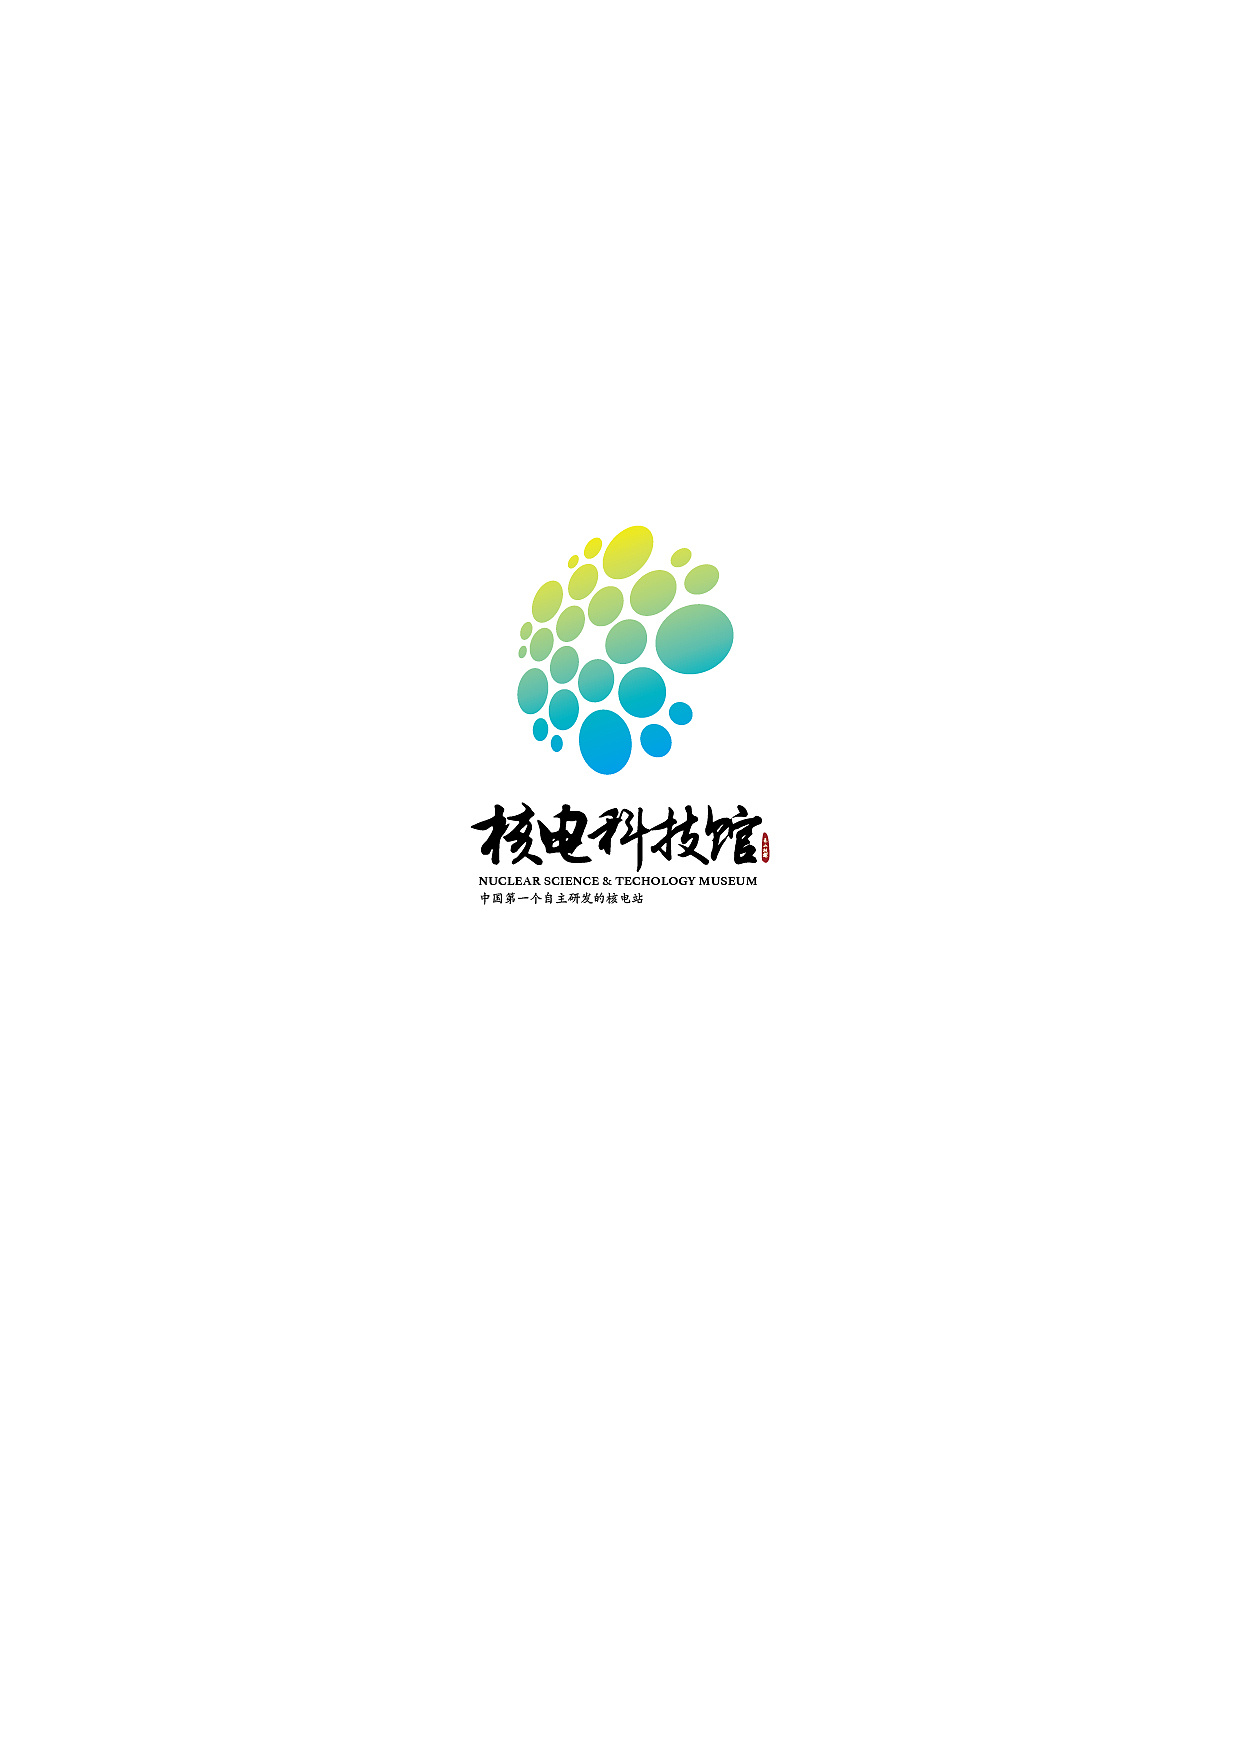 核电科技馆logo设计